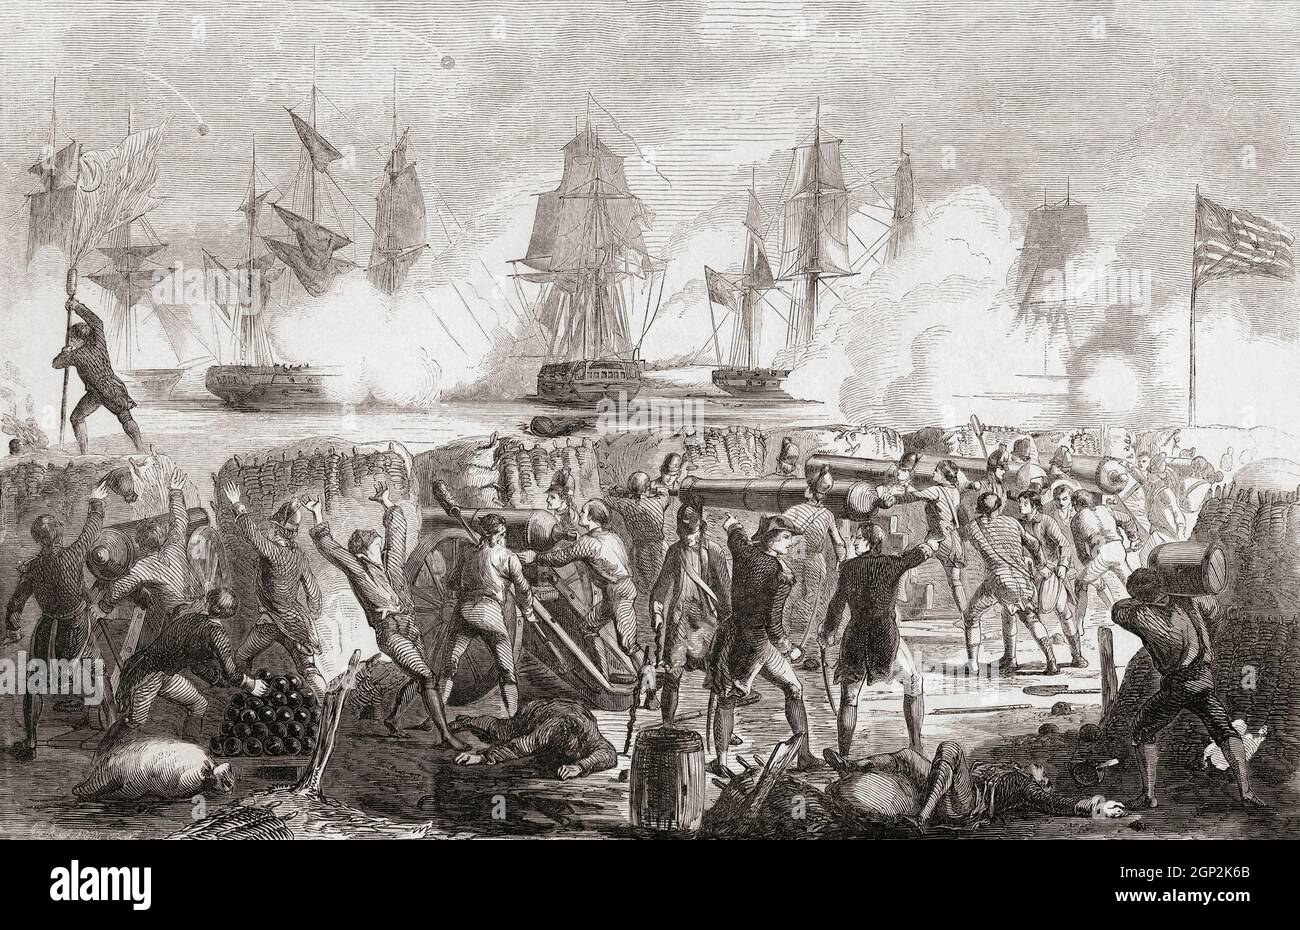 L'attaque de Fort Moultrie, Sullivan's Island, Caroline du Sud, le 28 juin 1776 pendant la Révolution américaine. Le fort, alors appelé Fort Sullivan, a été construit pour défendre Charleston, en Caroline du Sud, mais n'a été que partiellement achevé lorsque neuf navires de guerre britanniques ont attaqué. Cependant, le fort résiste à leur bombardement et ils sont forcés de se retirer sous de lourds tirs défensifs. Le commandant du fort pendant la bataille était William Moultrie et le fort fut renommé en son honneur. Banque D'Images